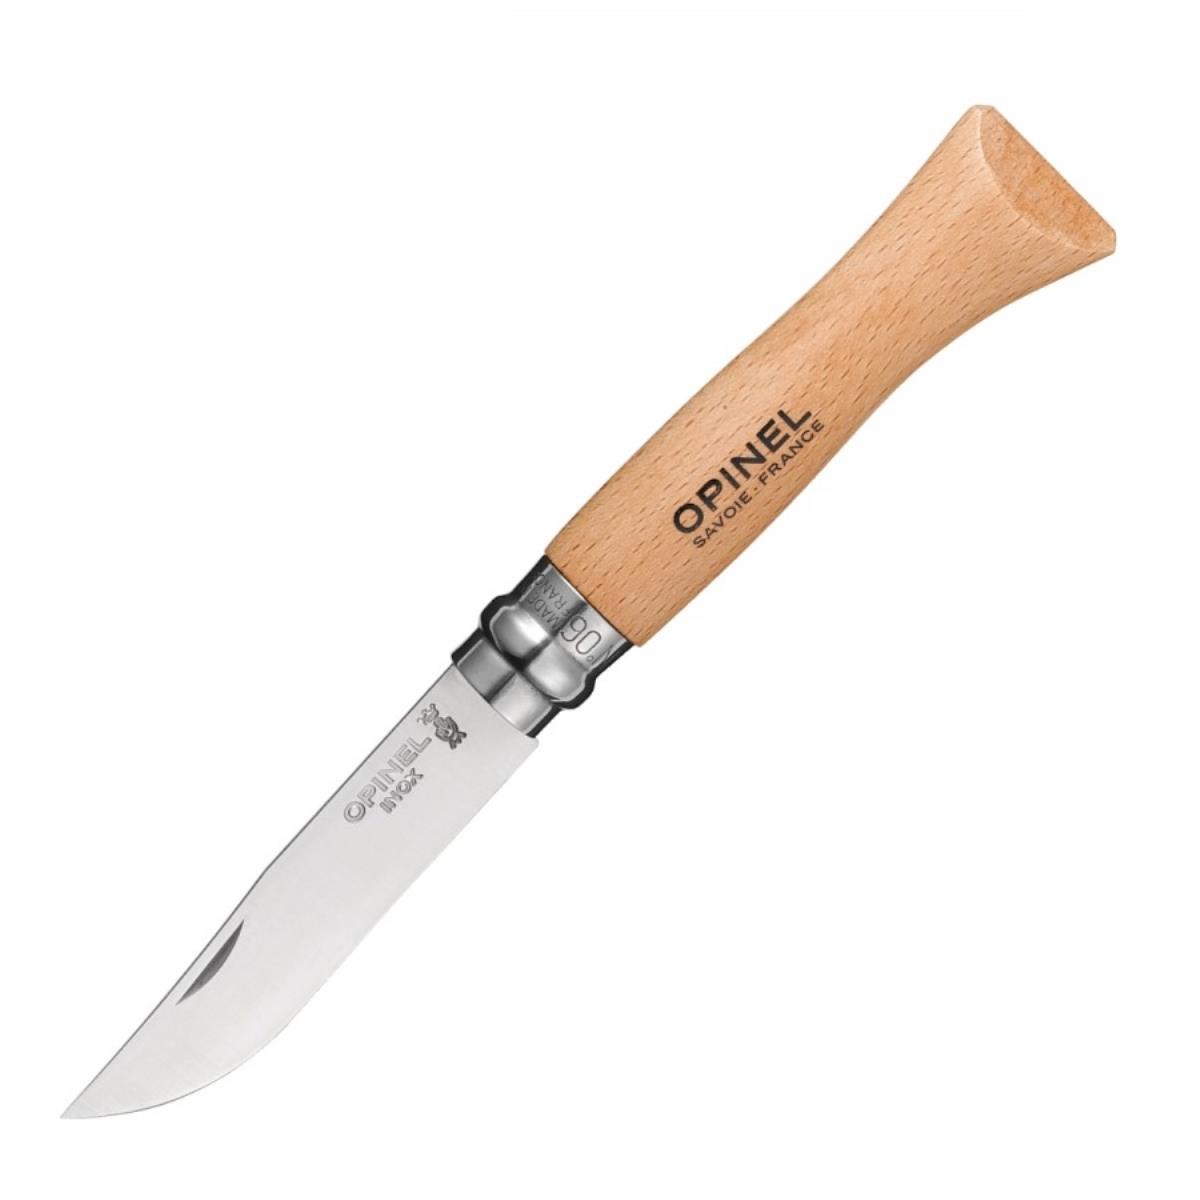 Нож №6 VRI Tradition Inox (нерж.сталь, рукоять бук, длина клинка 7 см) (1230607) OPINEL нож туристический аир засапожный 2 сталь 100х13м рукоять кожа